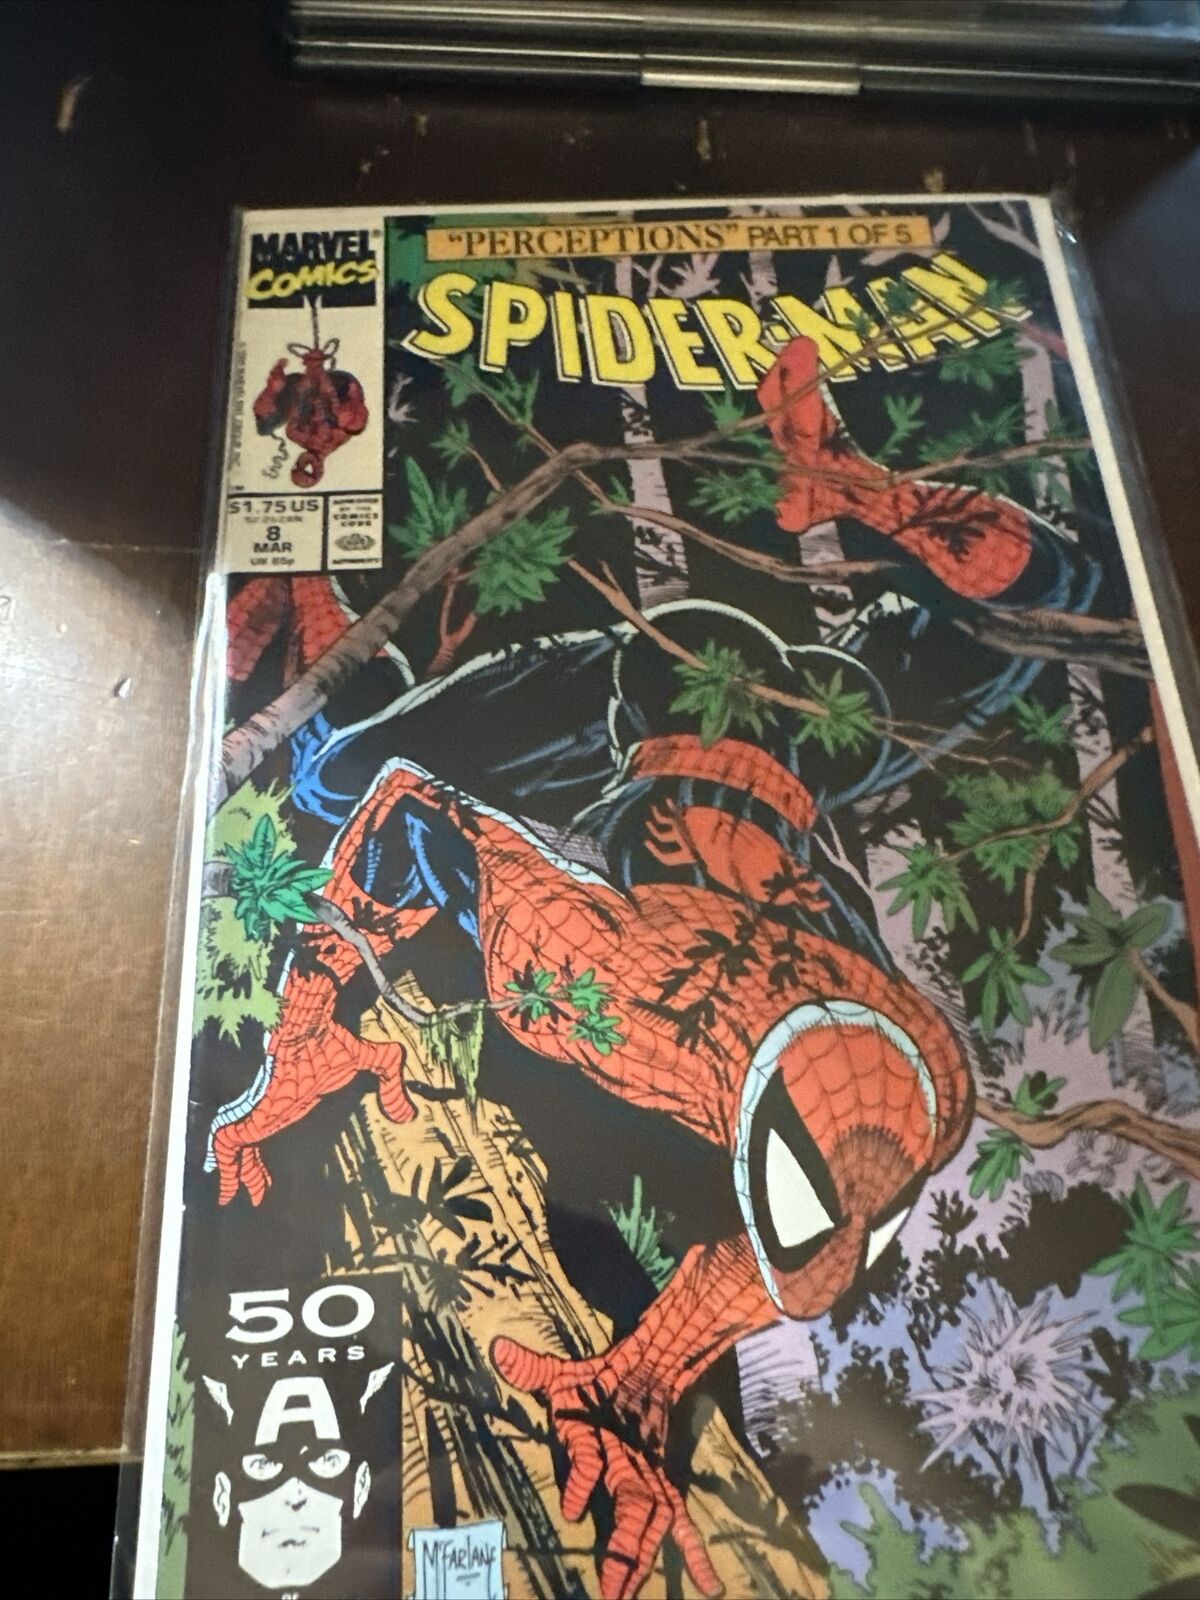 SPIDER-MAN PERCEPTIONS SET COMICS, PARTS 1-5 of 5, MCFARLANE 1991, #8-12, Marvel